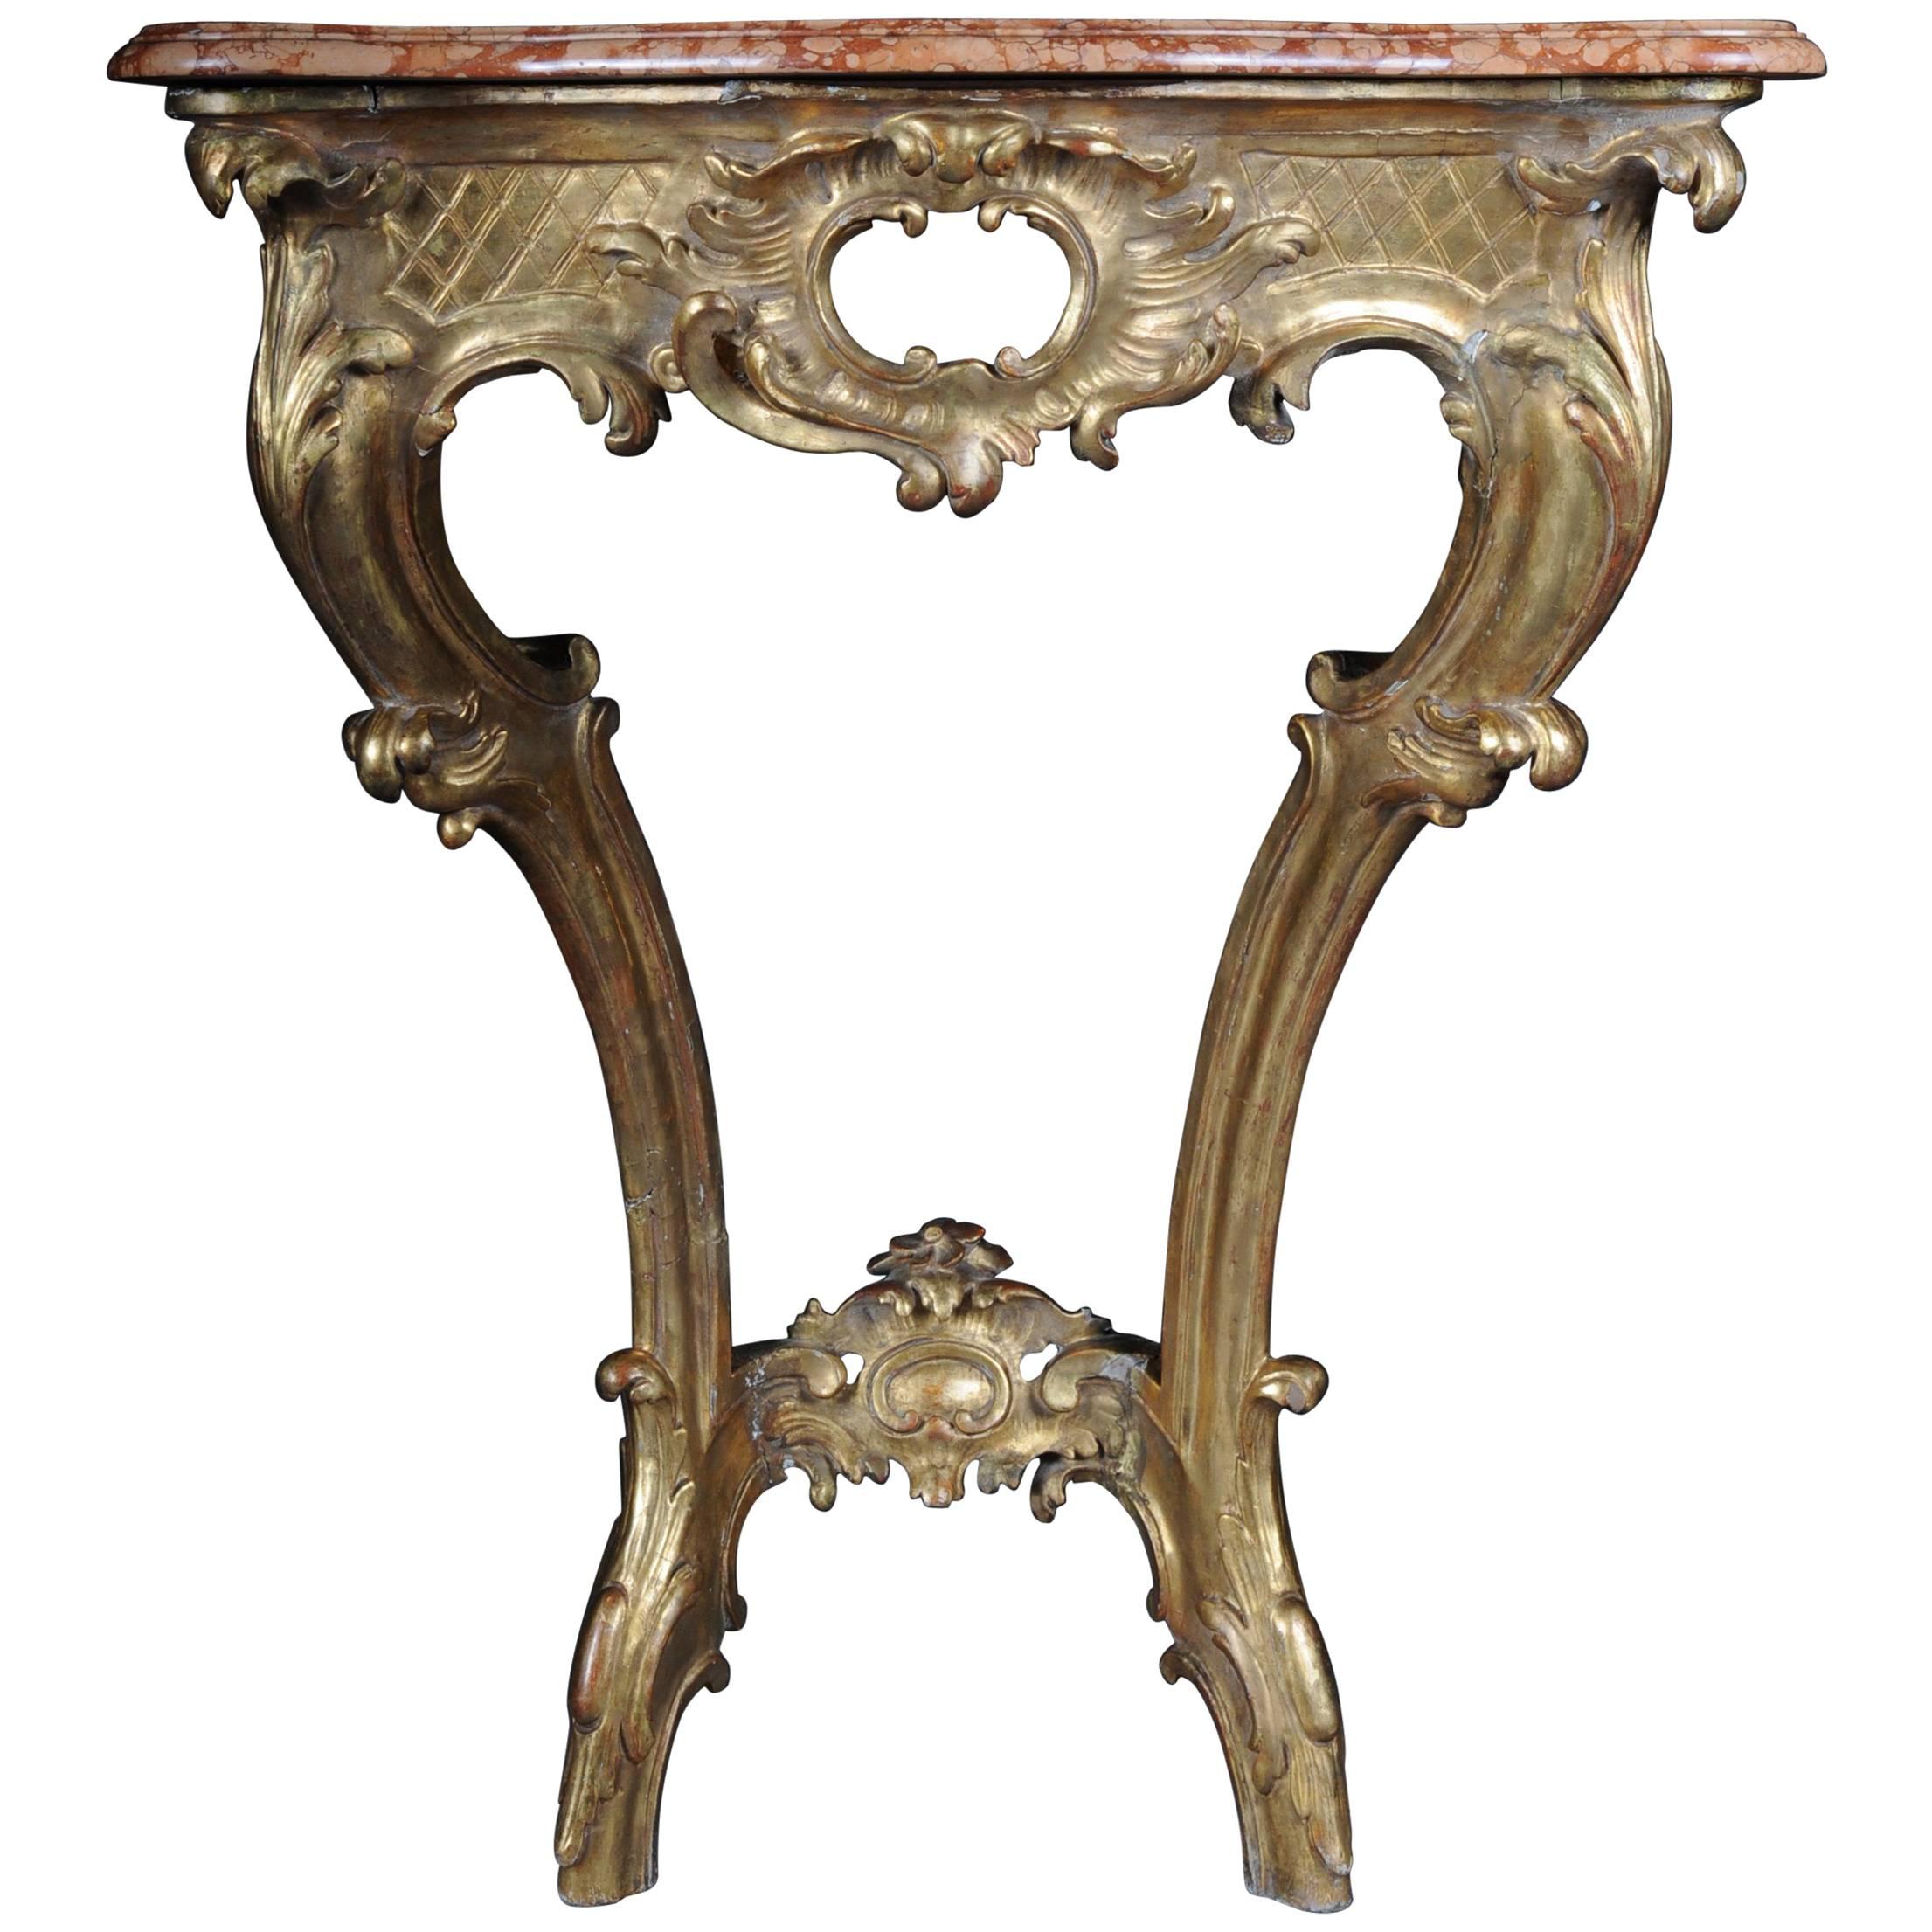 Table console française ancienne, datant d'environ 1790-1810